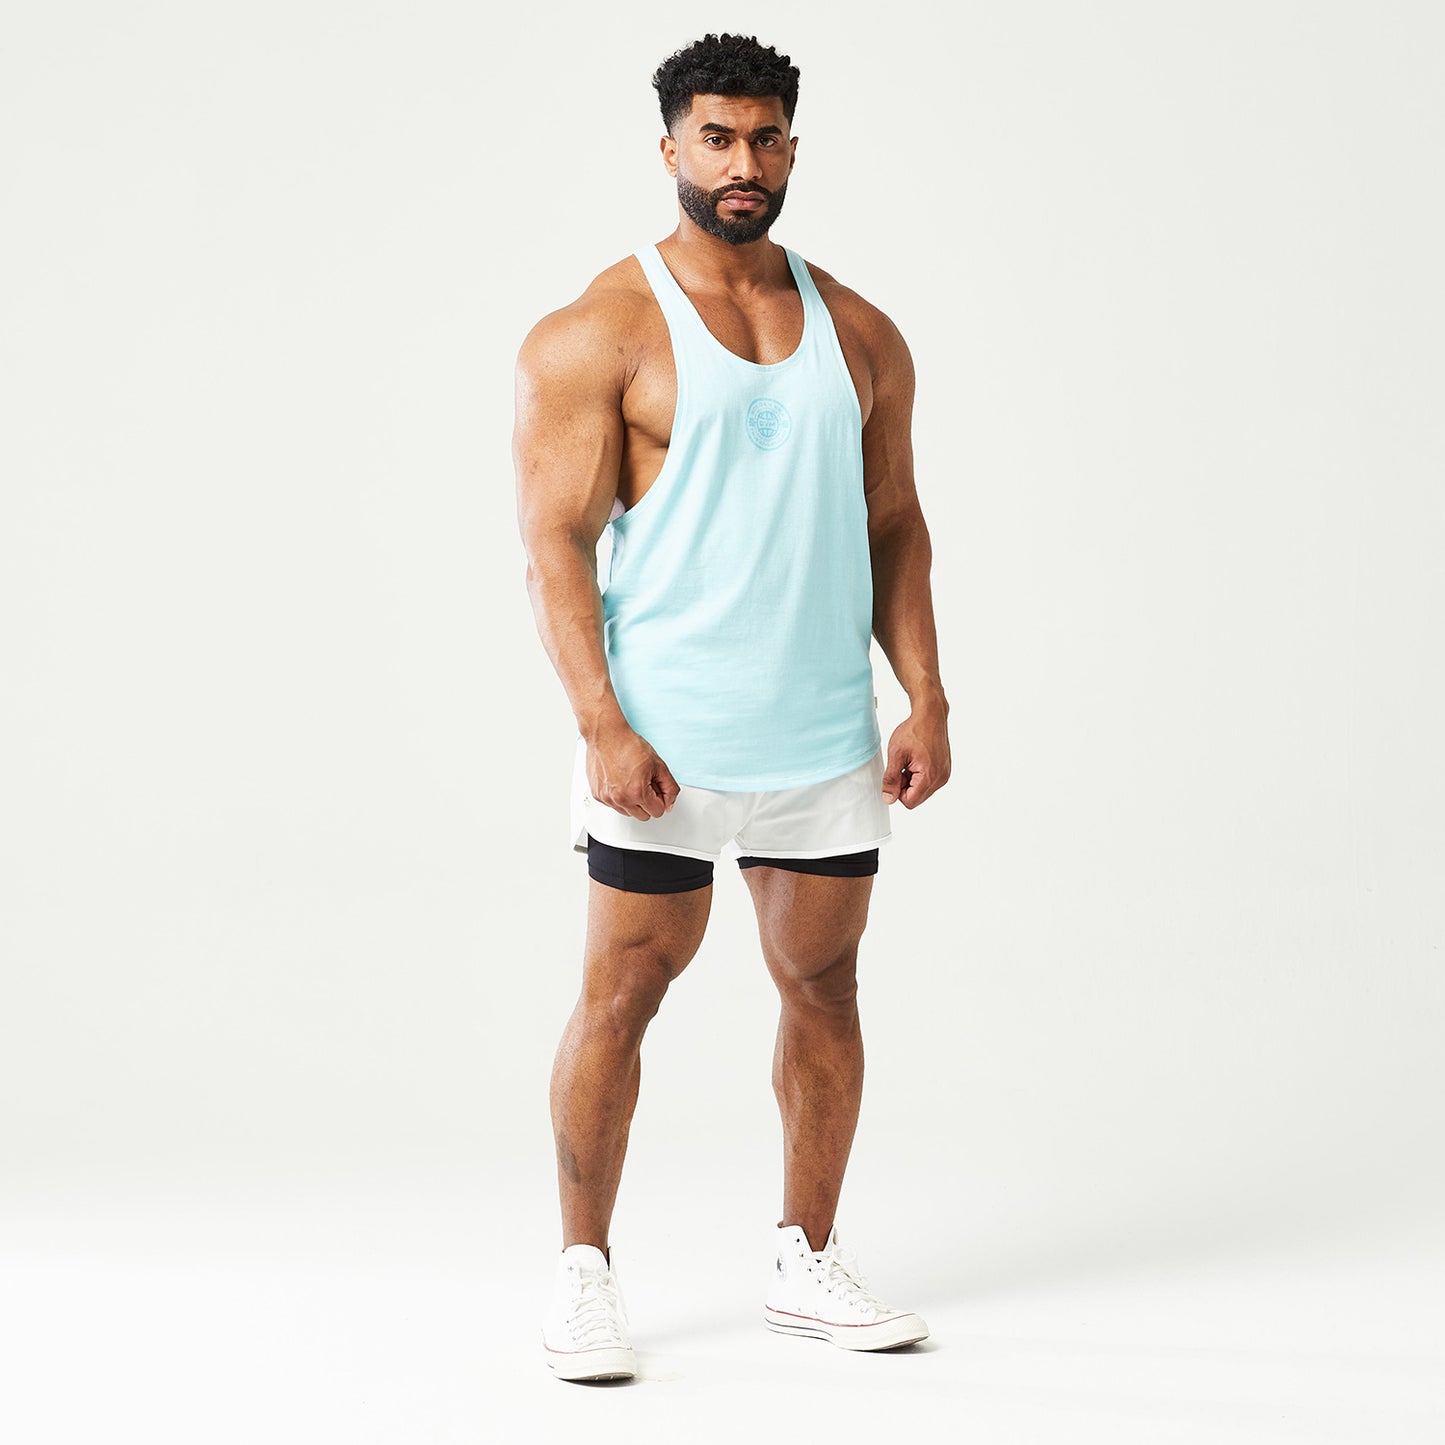 squatwolf-gym-wear-golden-era-stringer-blue-workout-stringers-vests-for-men